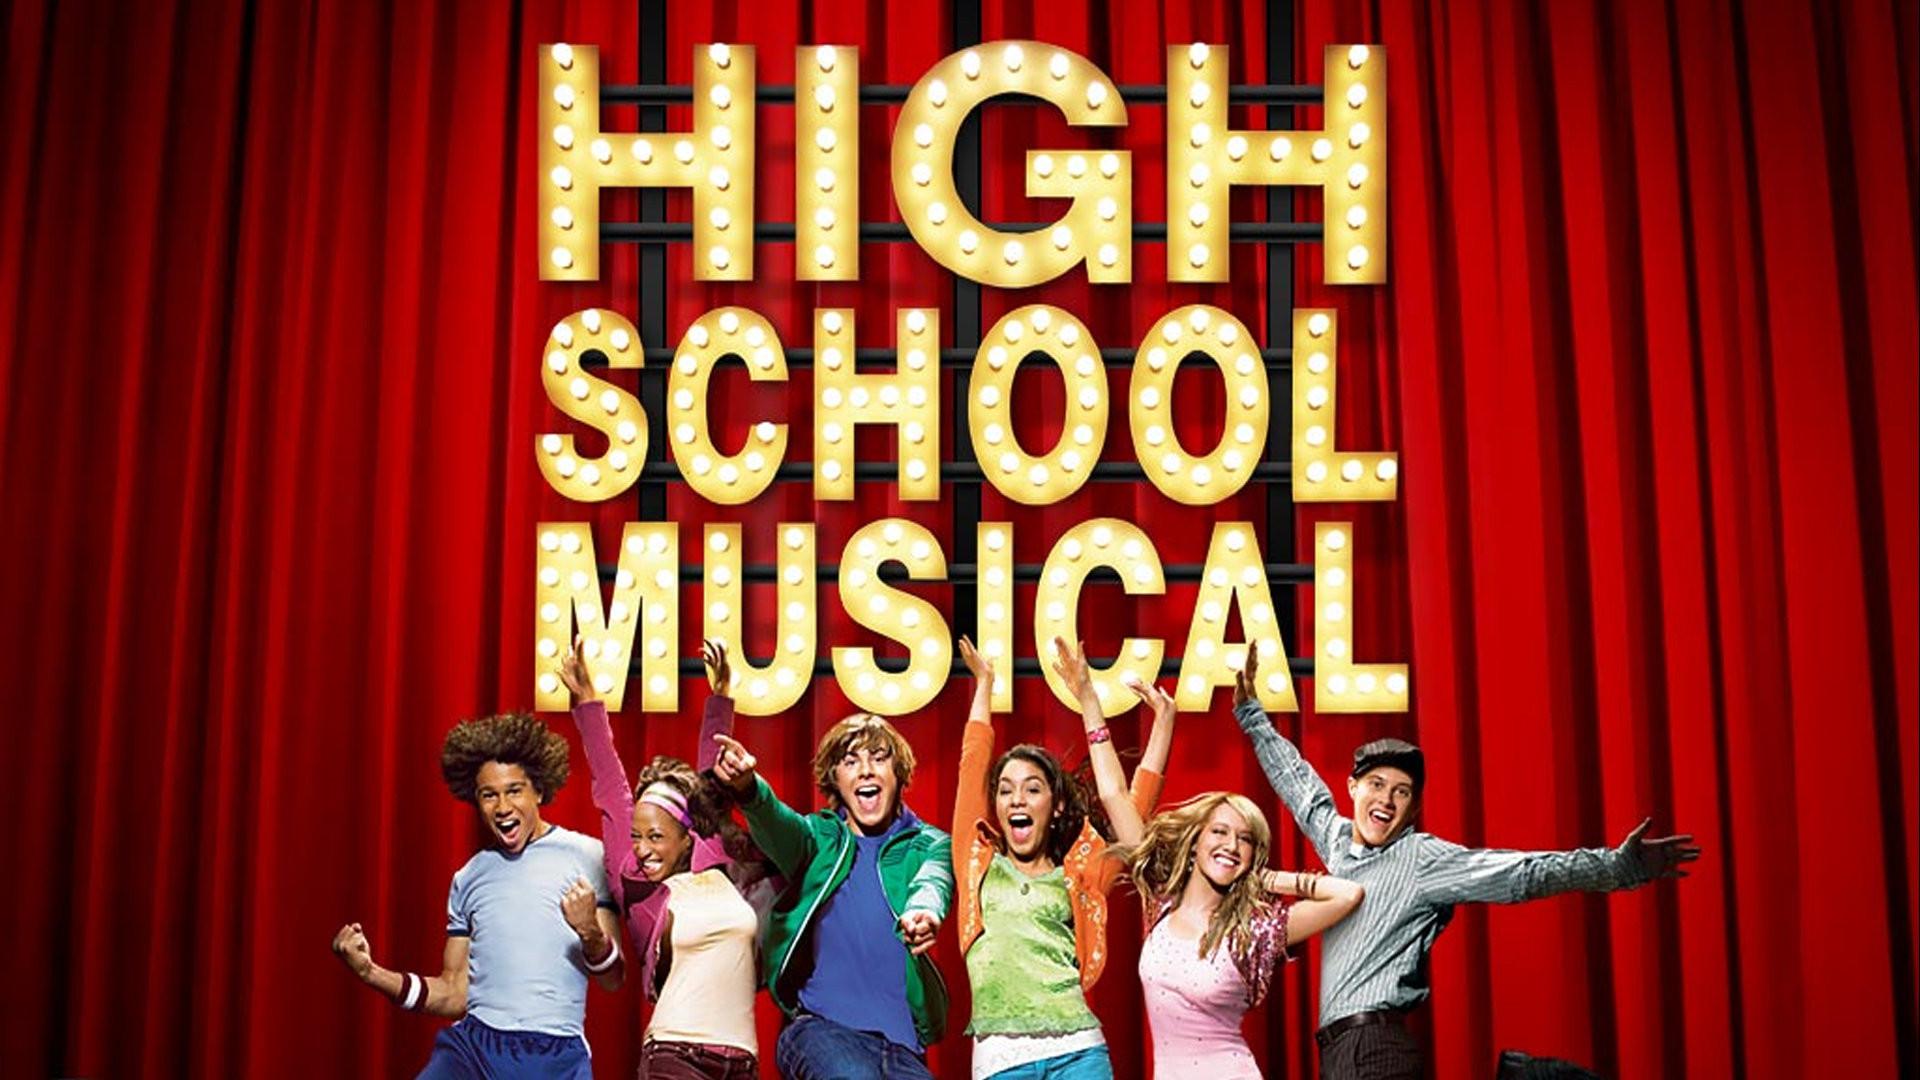 Meet the Cast of Disney's New 'High School Musical' Series